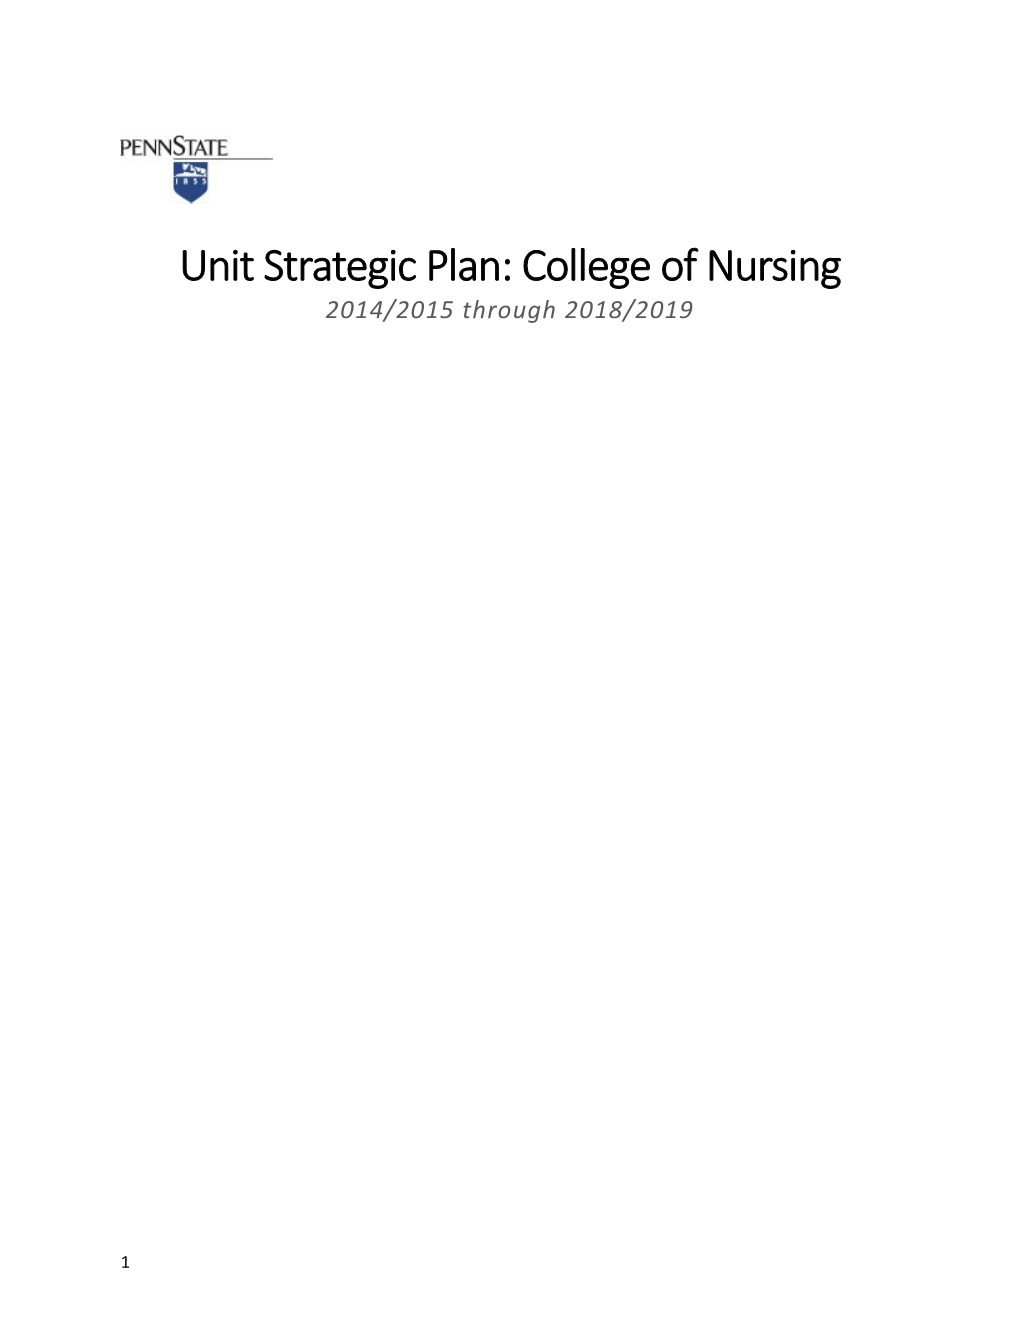 Penn State College of Nursing Strategic Plan